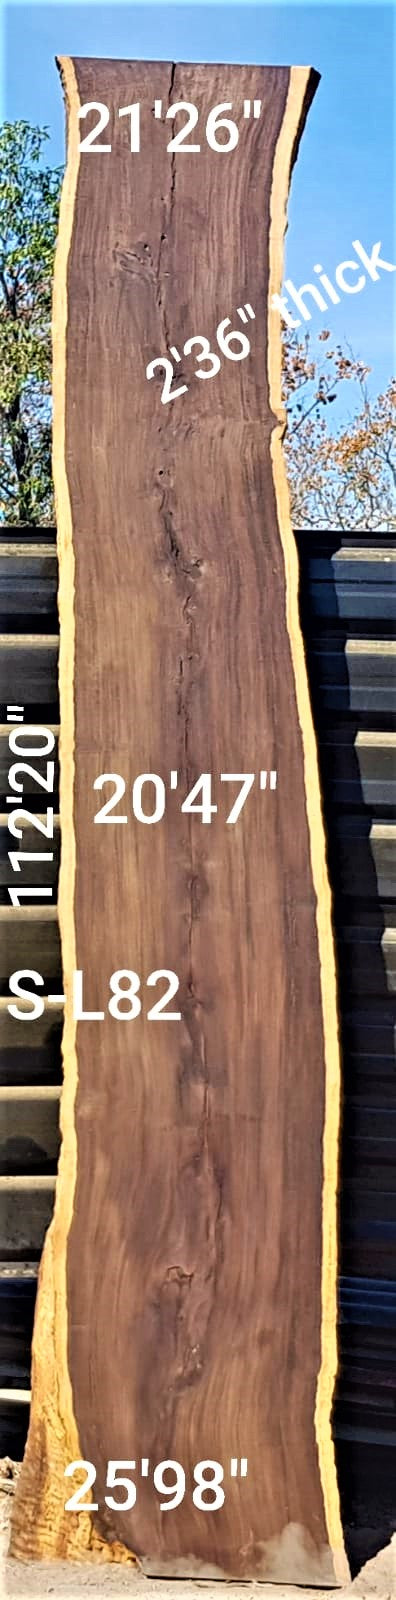 Leadwood Slab (112.20" x 25.98" x 2.36")